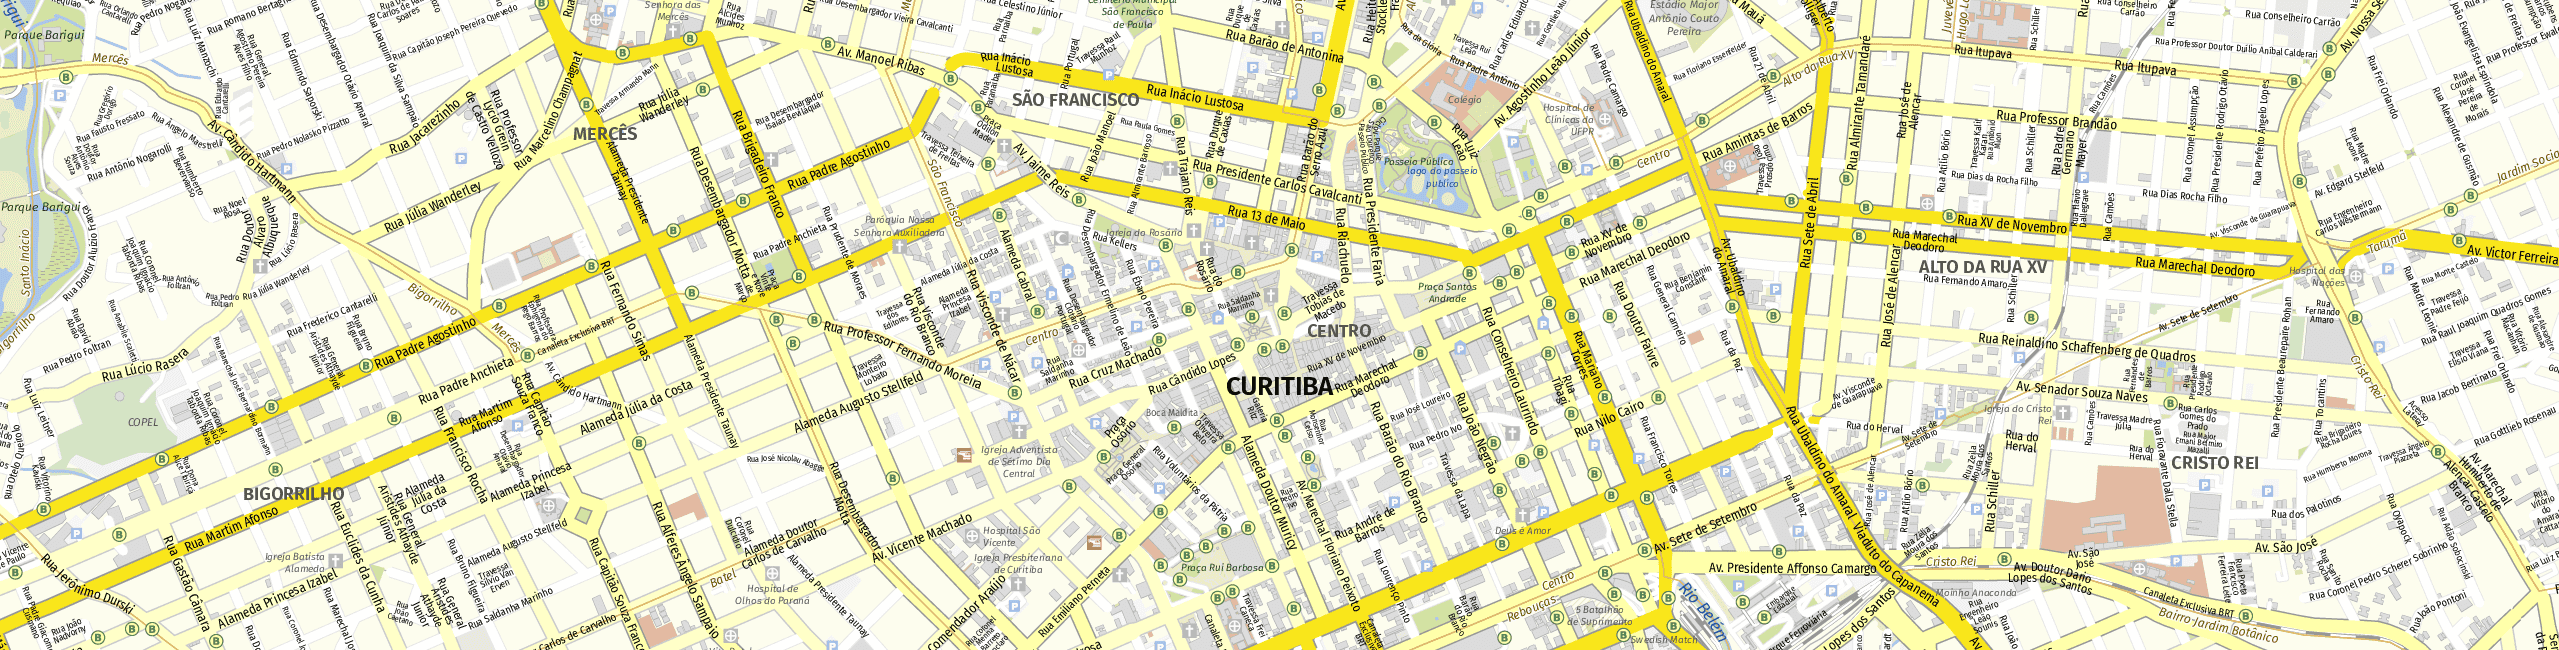 Stadtplan Curitiba zum Downloaden.